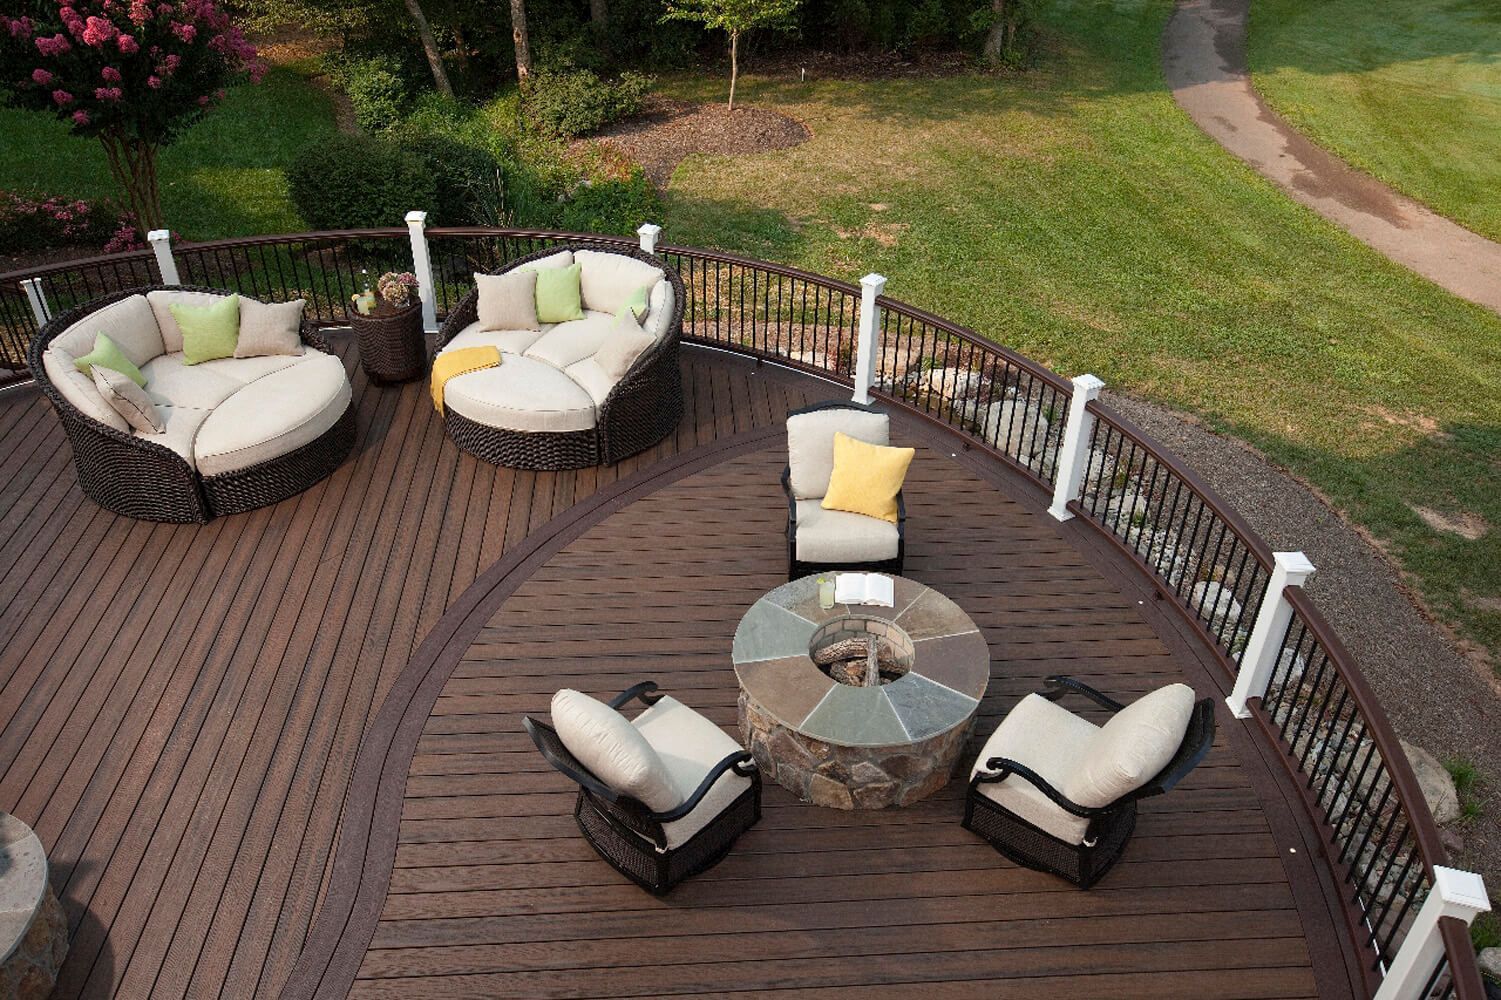 Rund ausgeführte Terrasse im Garten mit Loungemöbeln und großen Lederliegen.